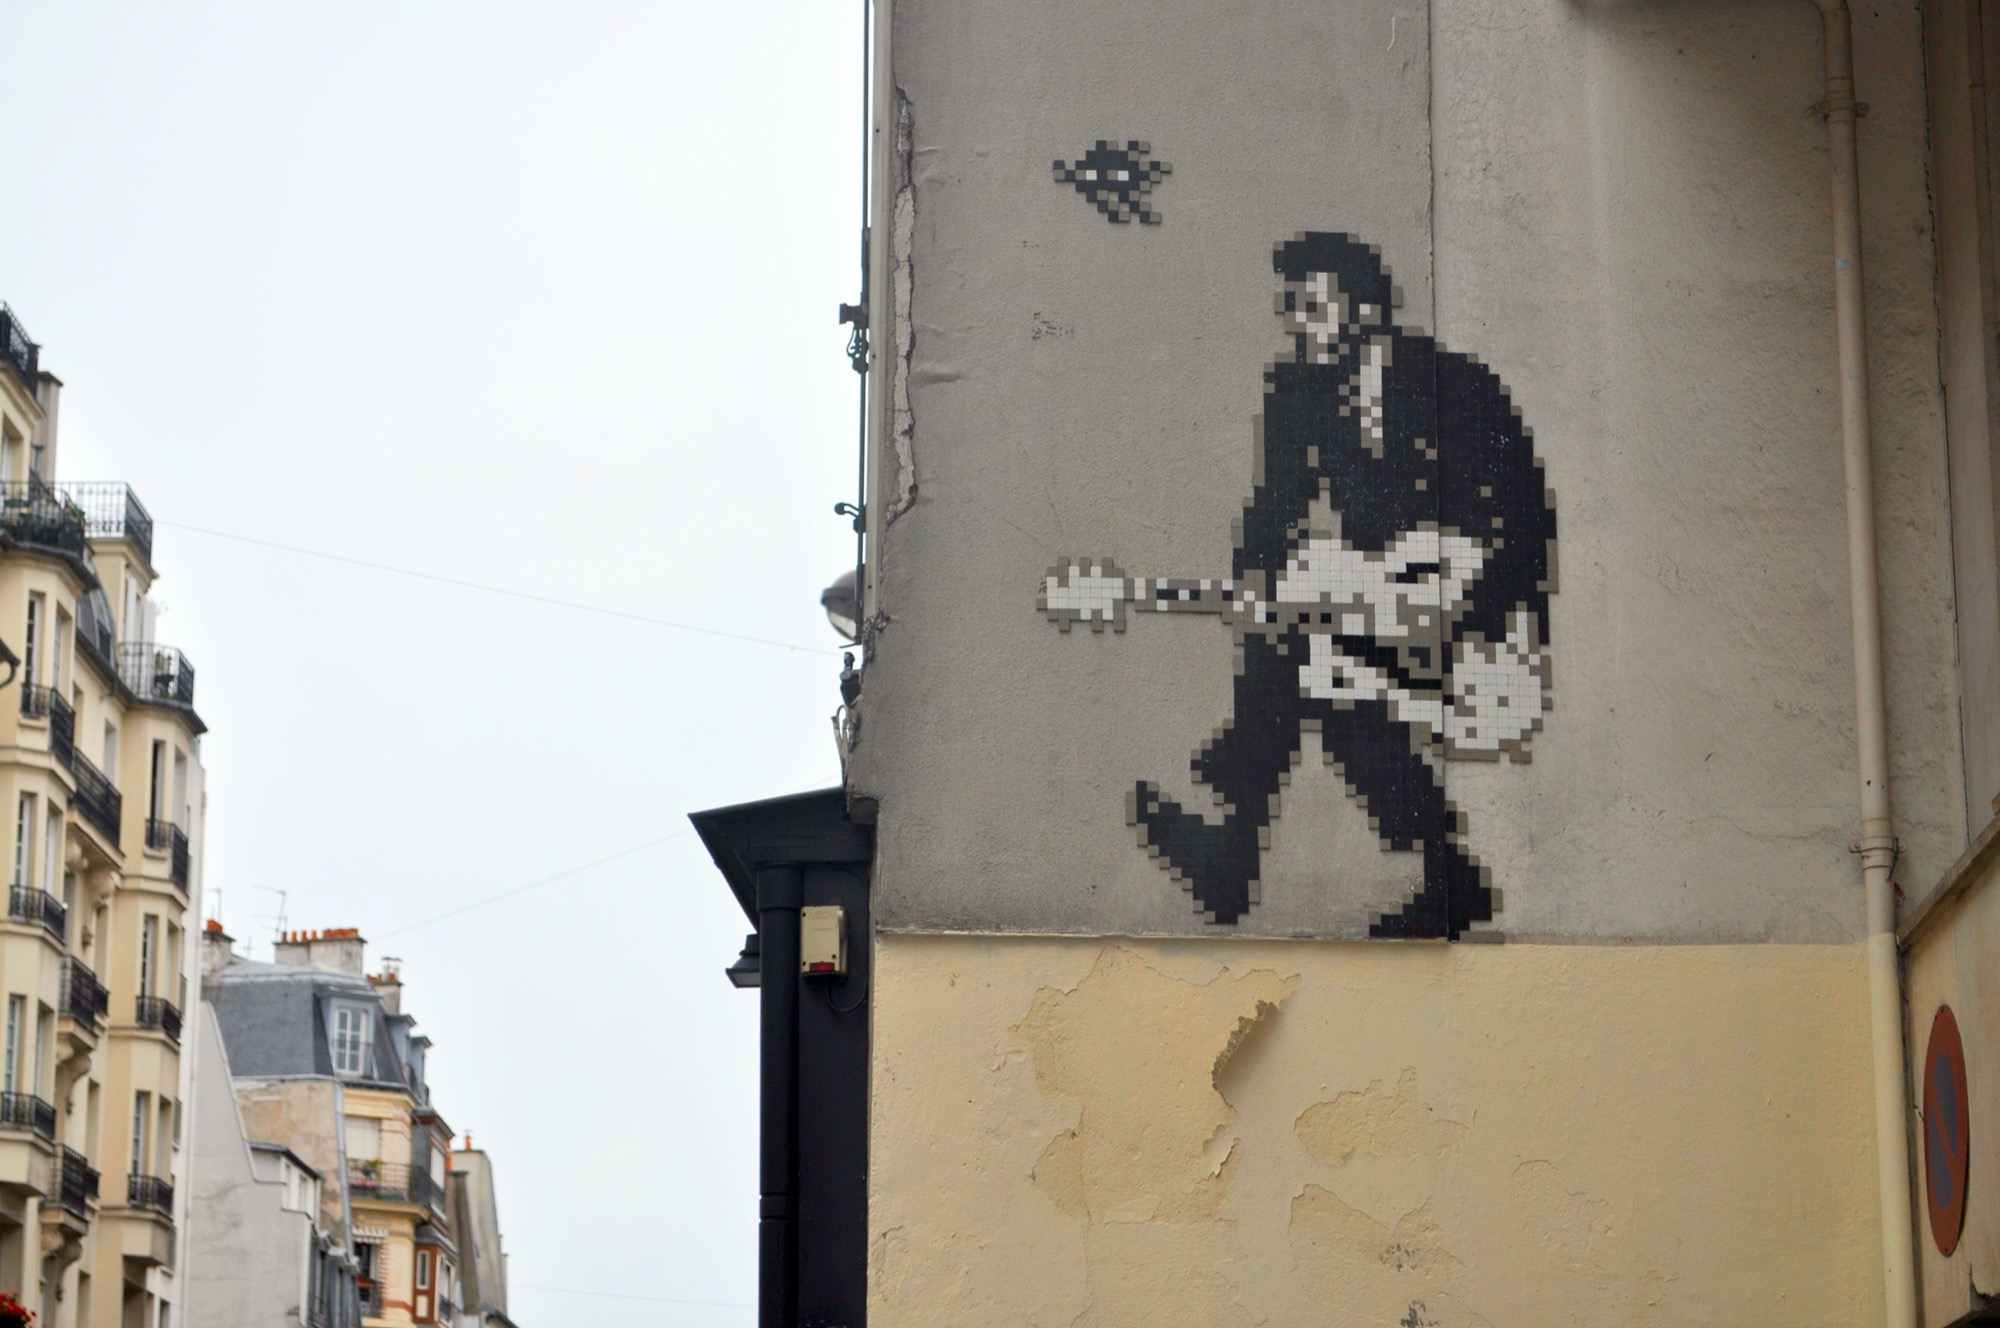 Mosaic 4504 Chuck Berry de Invader capturé par elettrotajik à Paris France